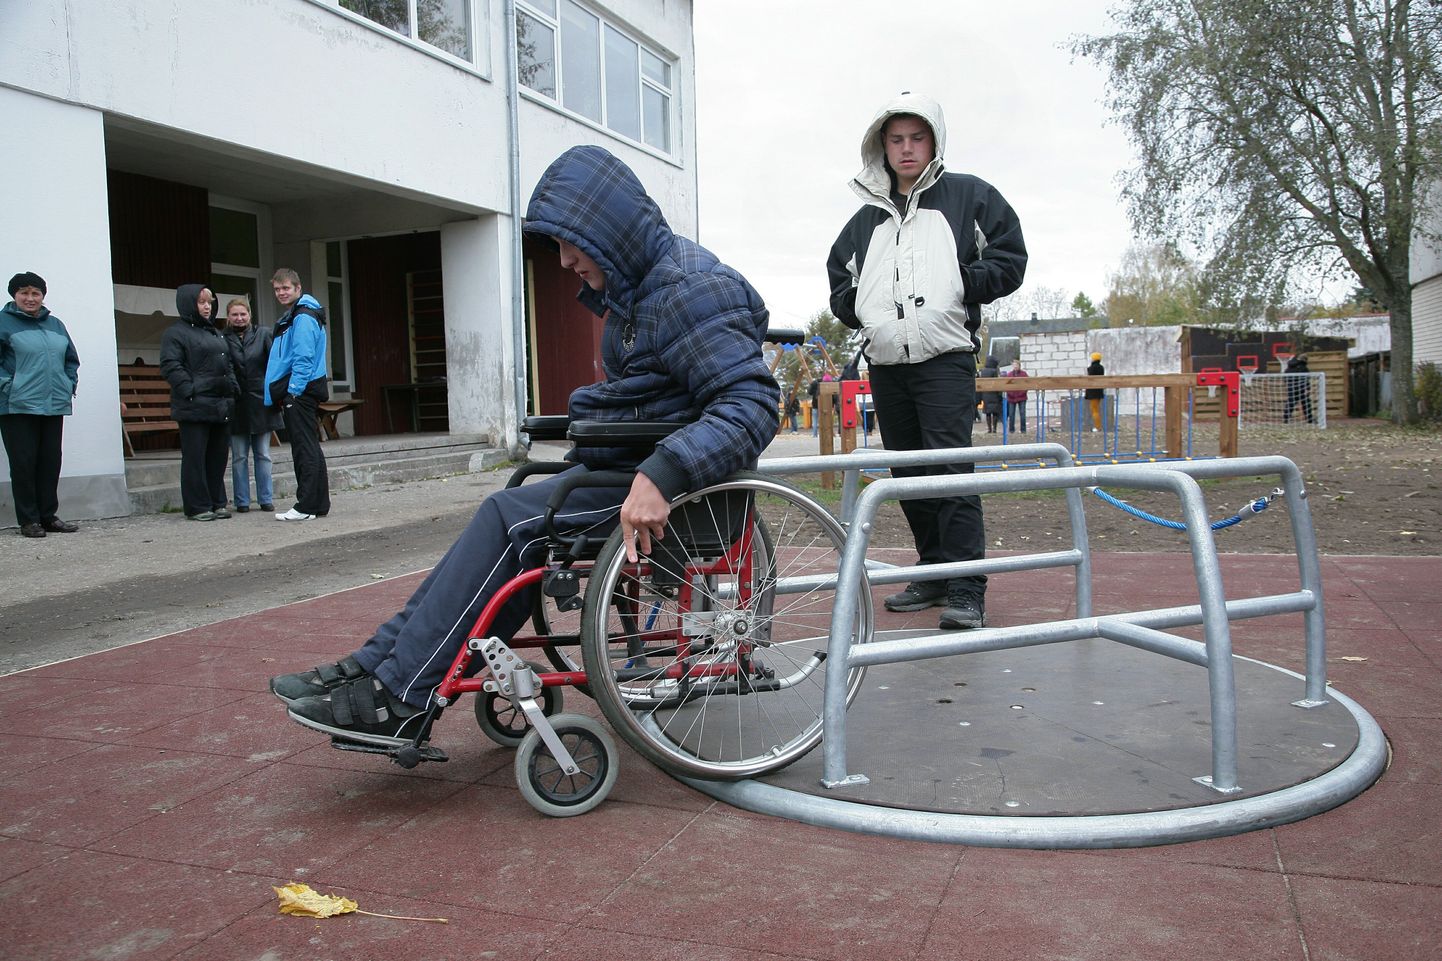 Omavalitsused võtsid pärast põhjalikku selgitustööd enda kanda toimetulekukooli hoiuteenuse arved. Pildil kooli õuealal leiduv ratastoolikarussell.